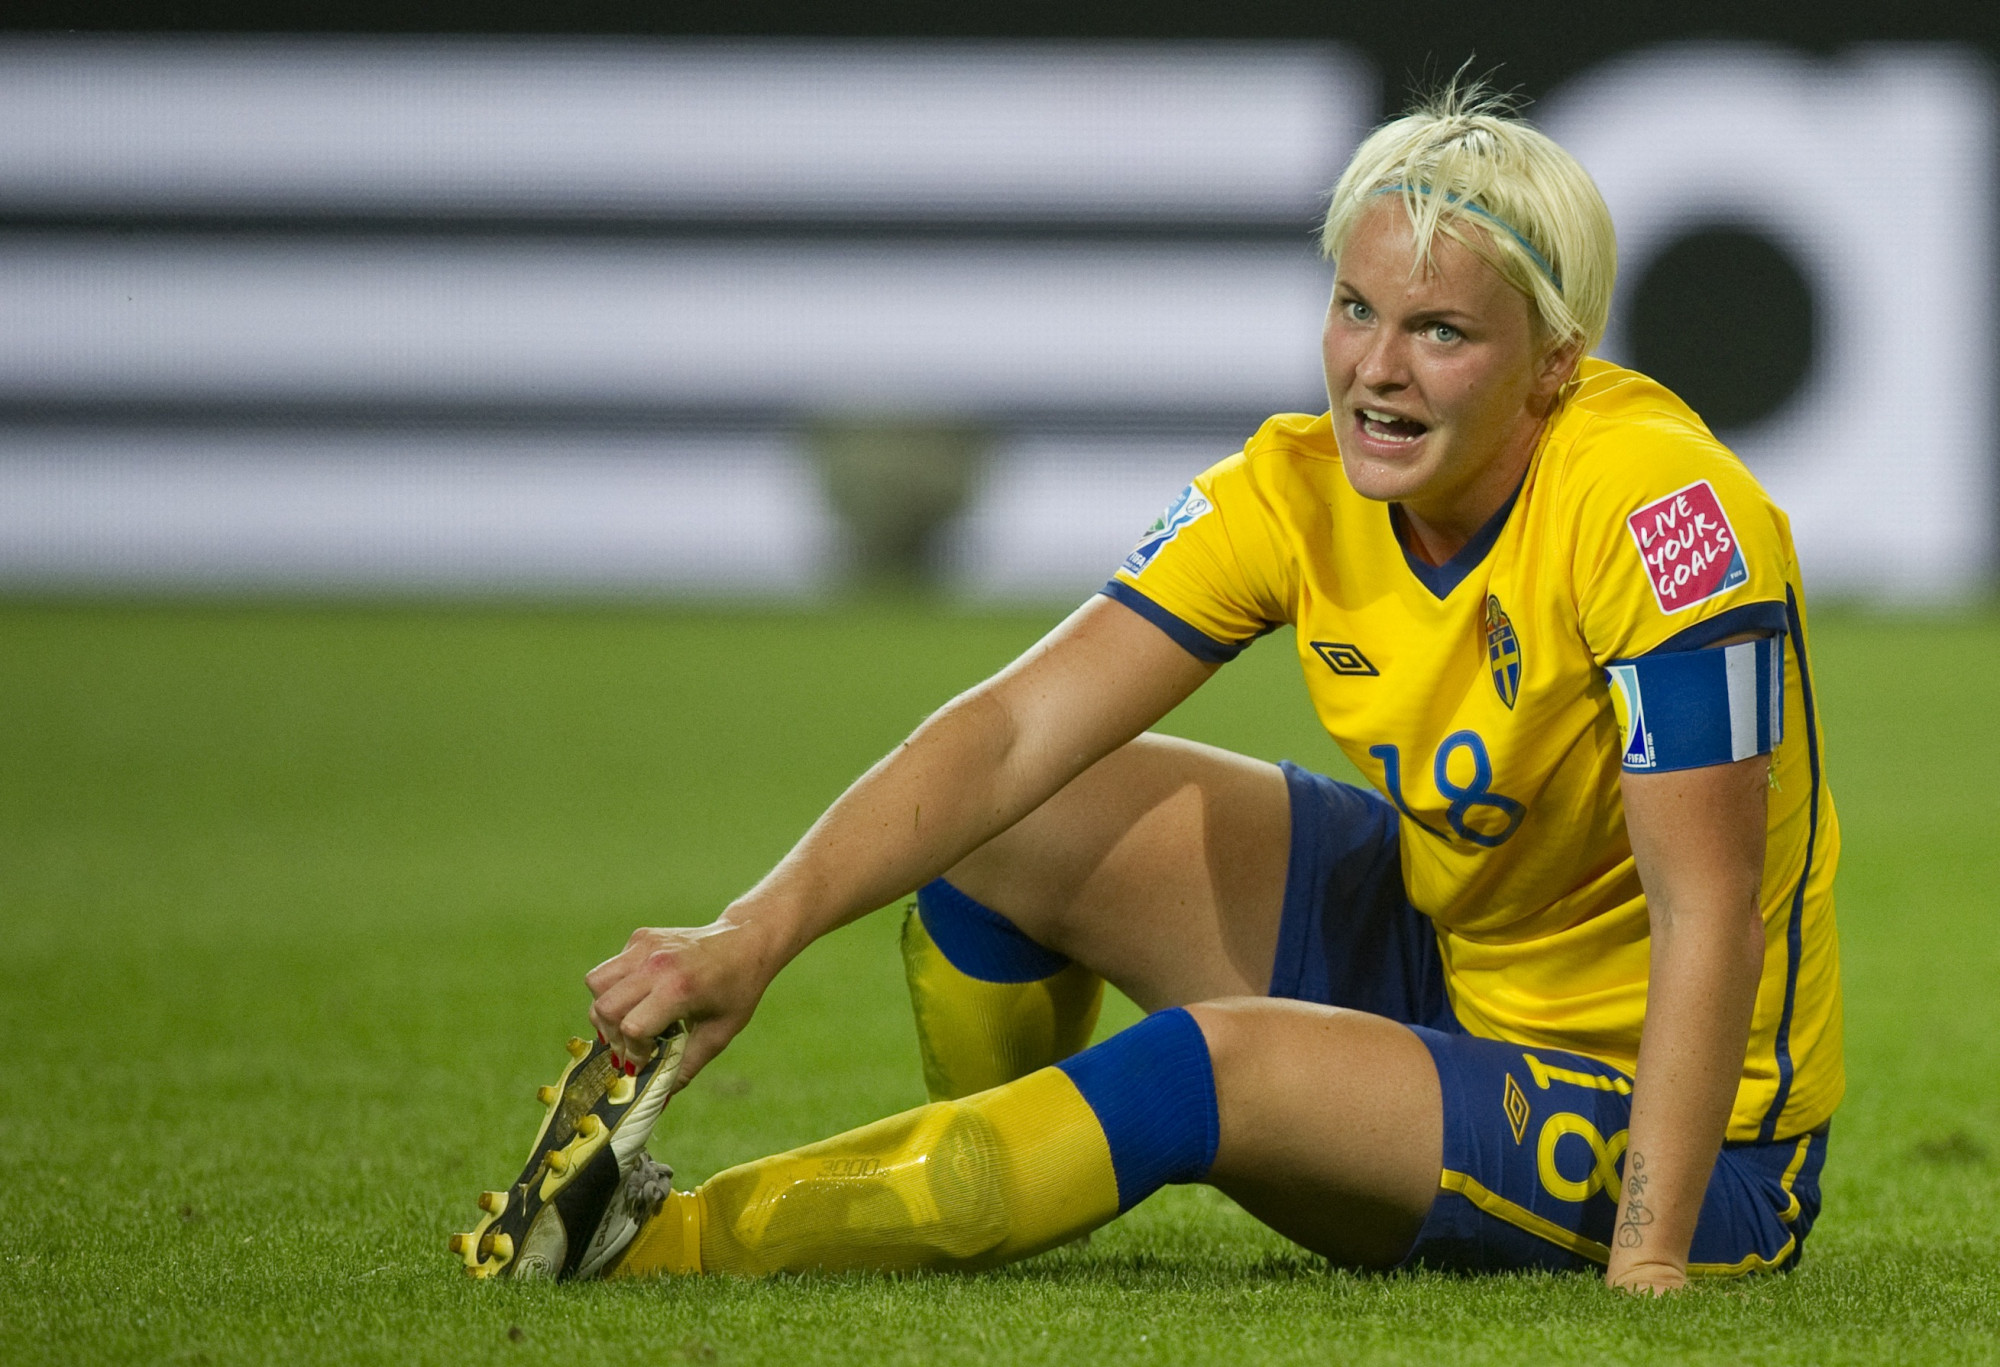 Egy volt svéd válogatott szerint a 2011-es női focivébén a focistáknak meg kellett mutatniuk, hogy nincs péniszük